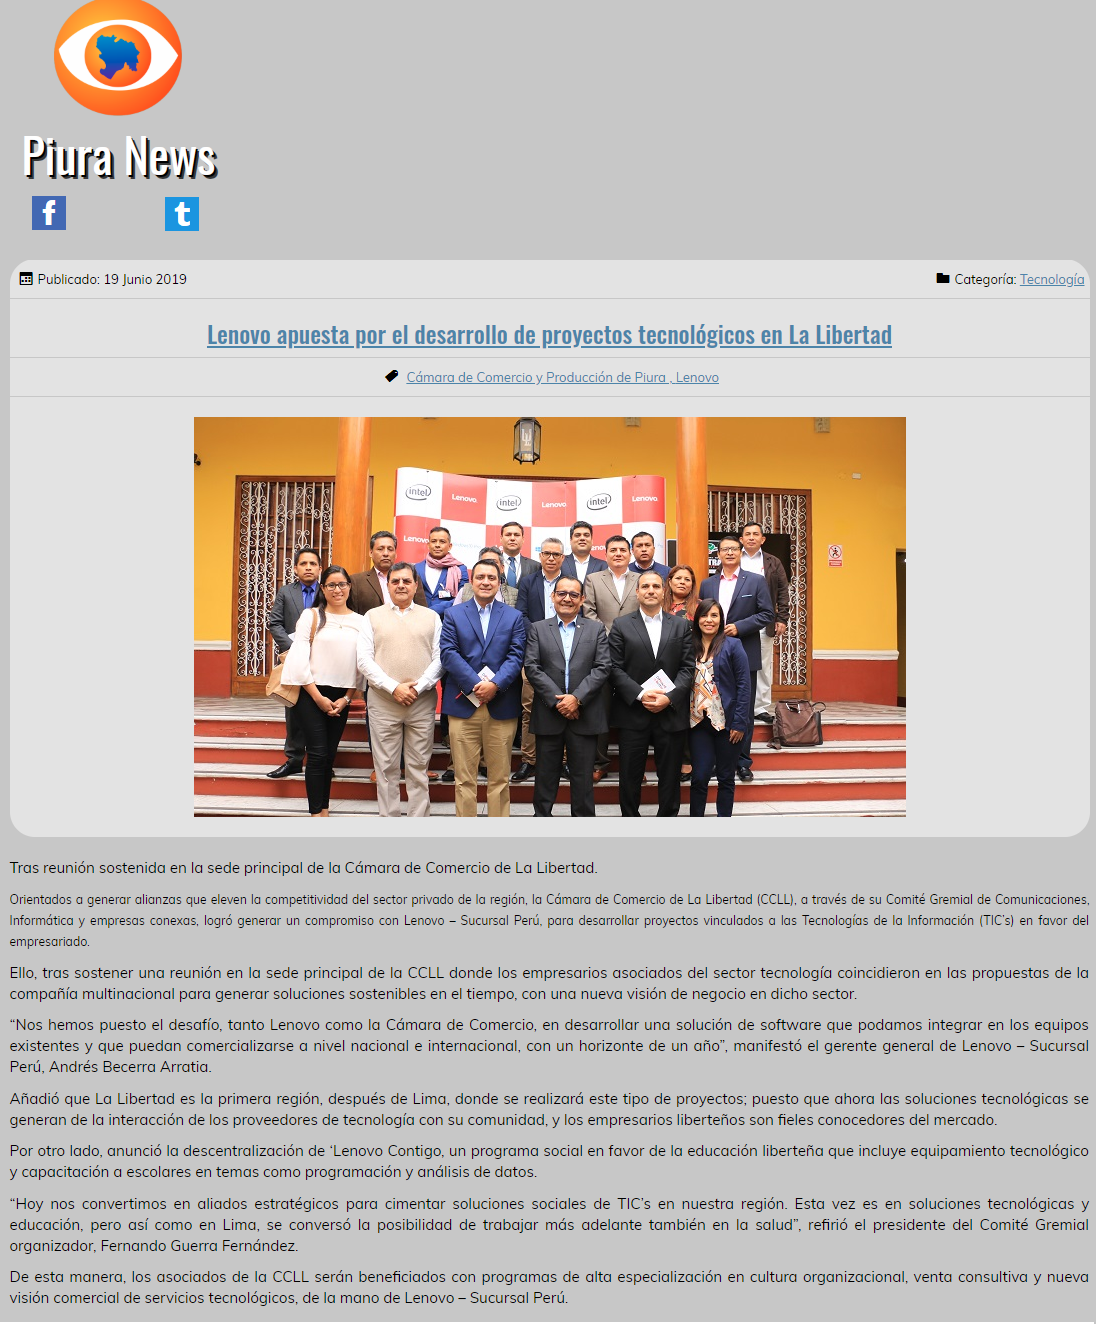 25.06.19.02 Piura News Lenovo apuesta por el desarrollo de proyectos tecnológicos en La Libertad Cámara de Comercio de La Libertad